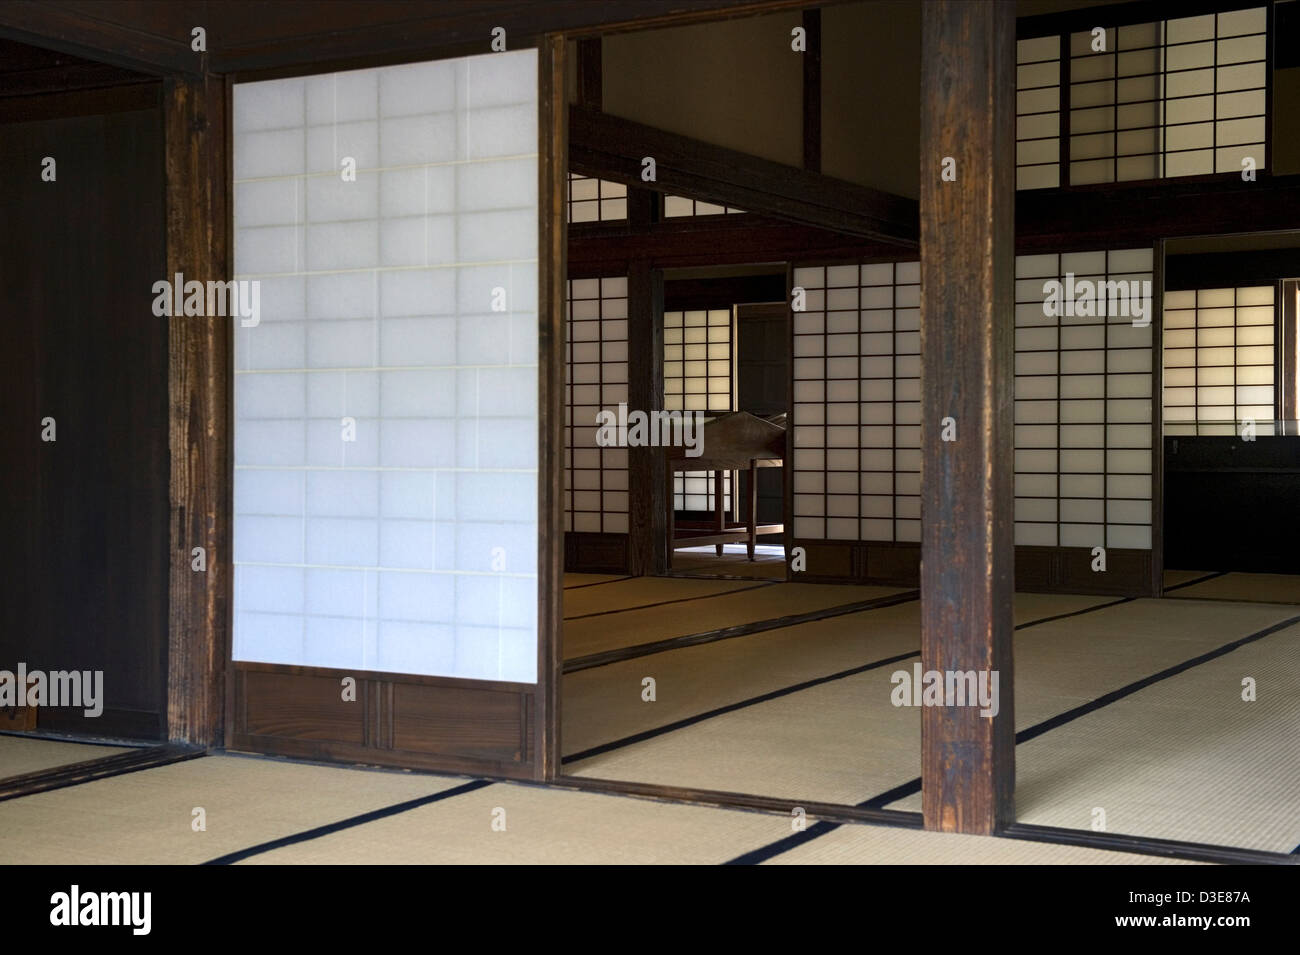 Les tatami et papier shoji écrans sont des éléments traditionnels de campagne à l'école dans des bâtiments Bunbu Matsushiro, Nagano. Banque D'Images